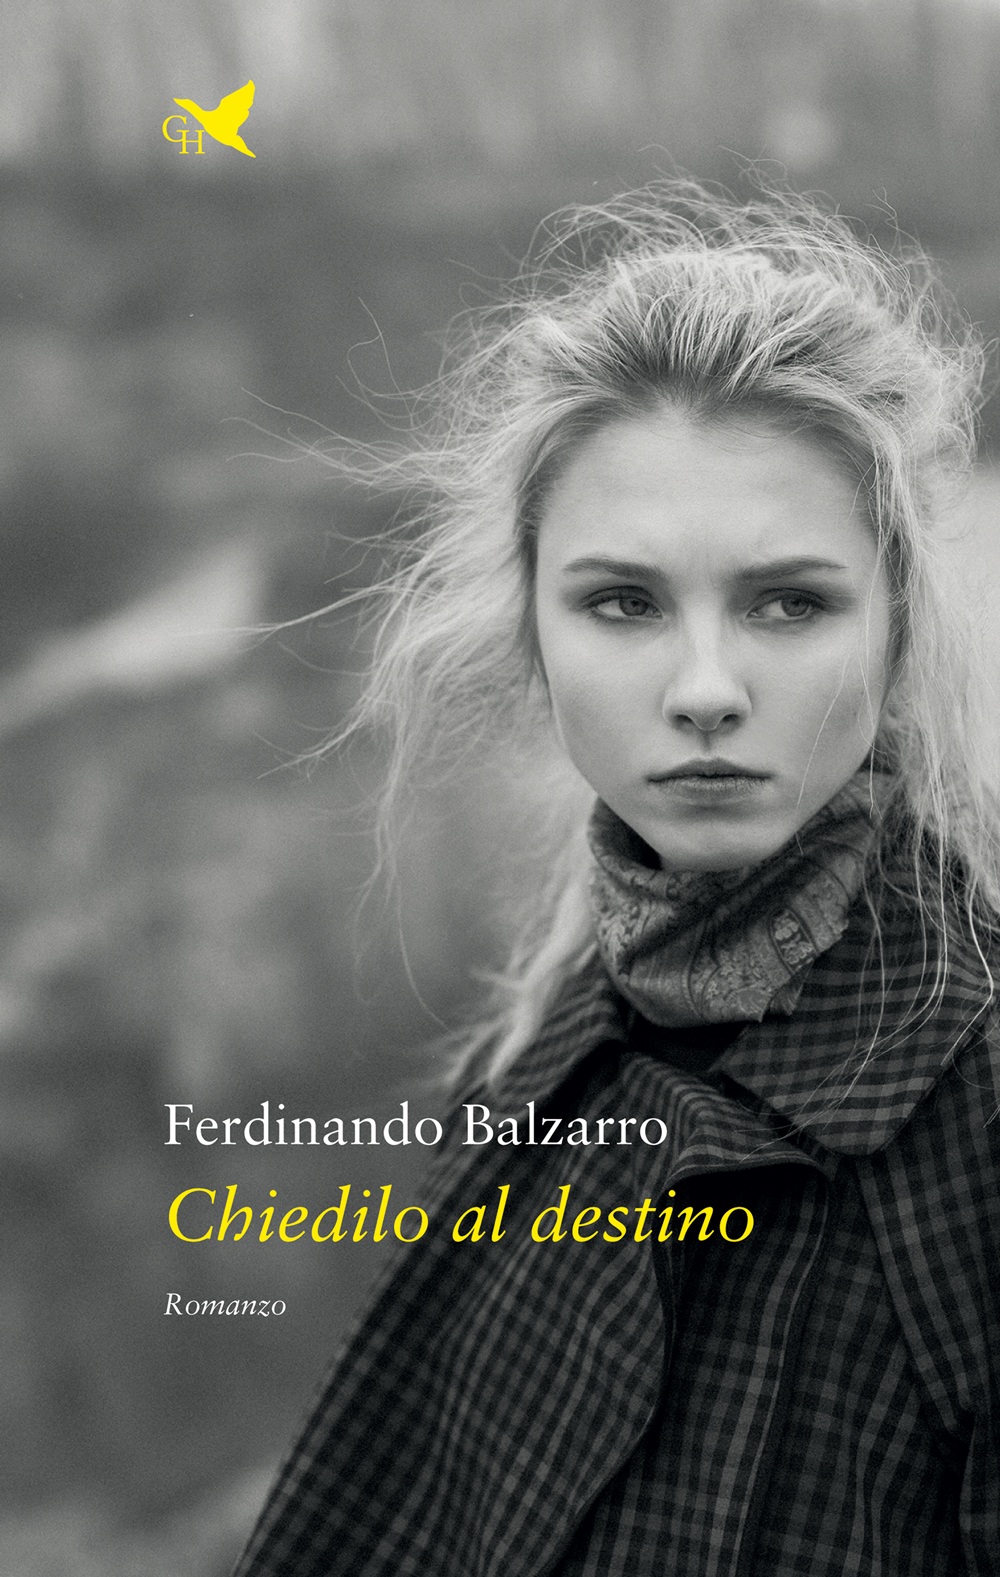 Il nuovo Romanzo CHIEDILO AL DESTINO di Ferdinando Balzarro in uscita il 28 febbraio in Libreria e negli Store Online ed anche Amazon